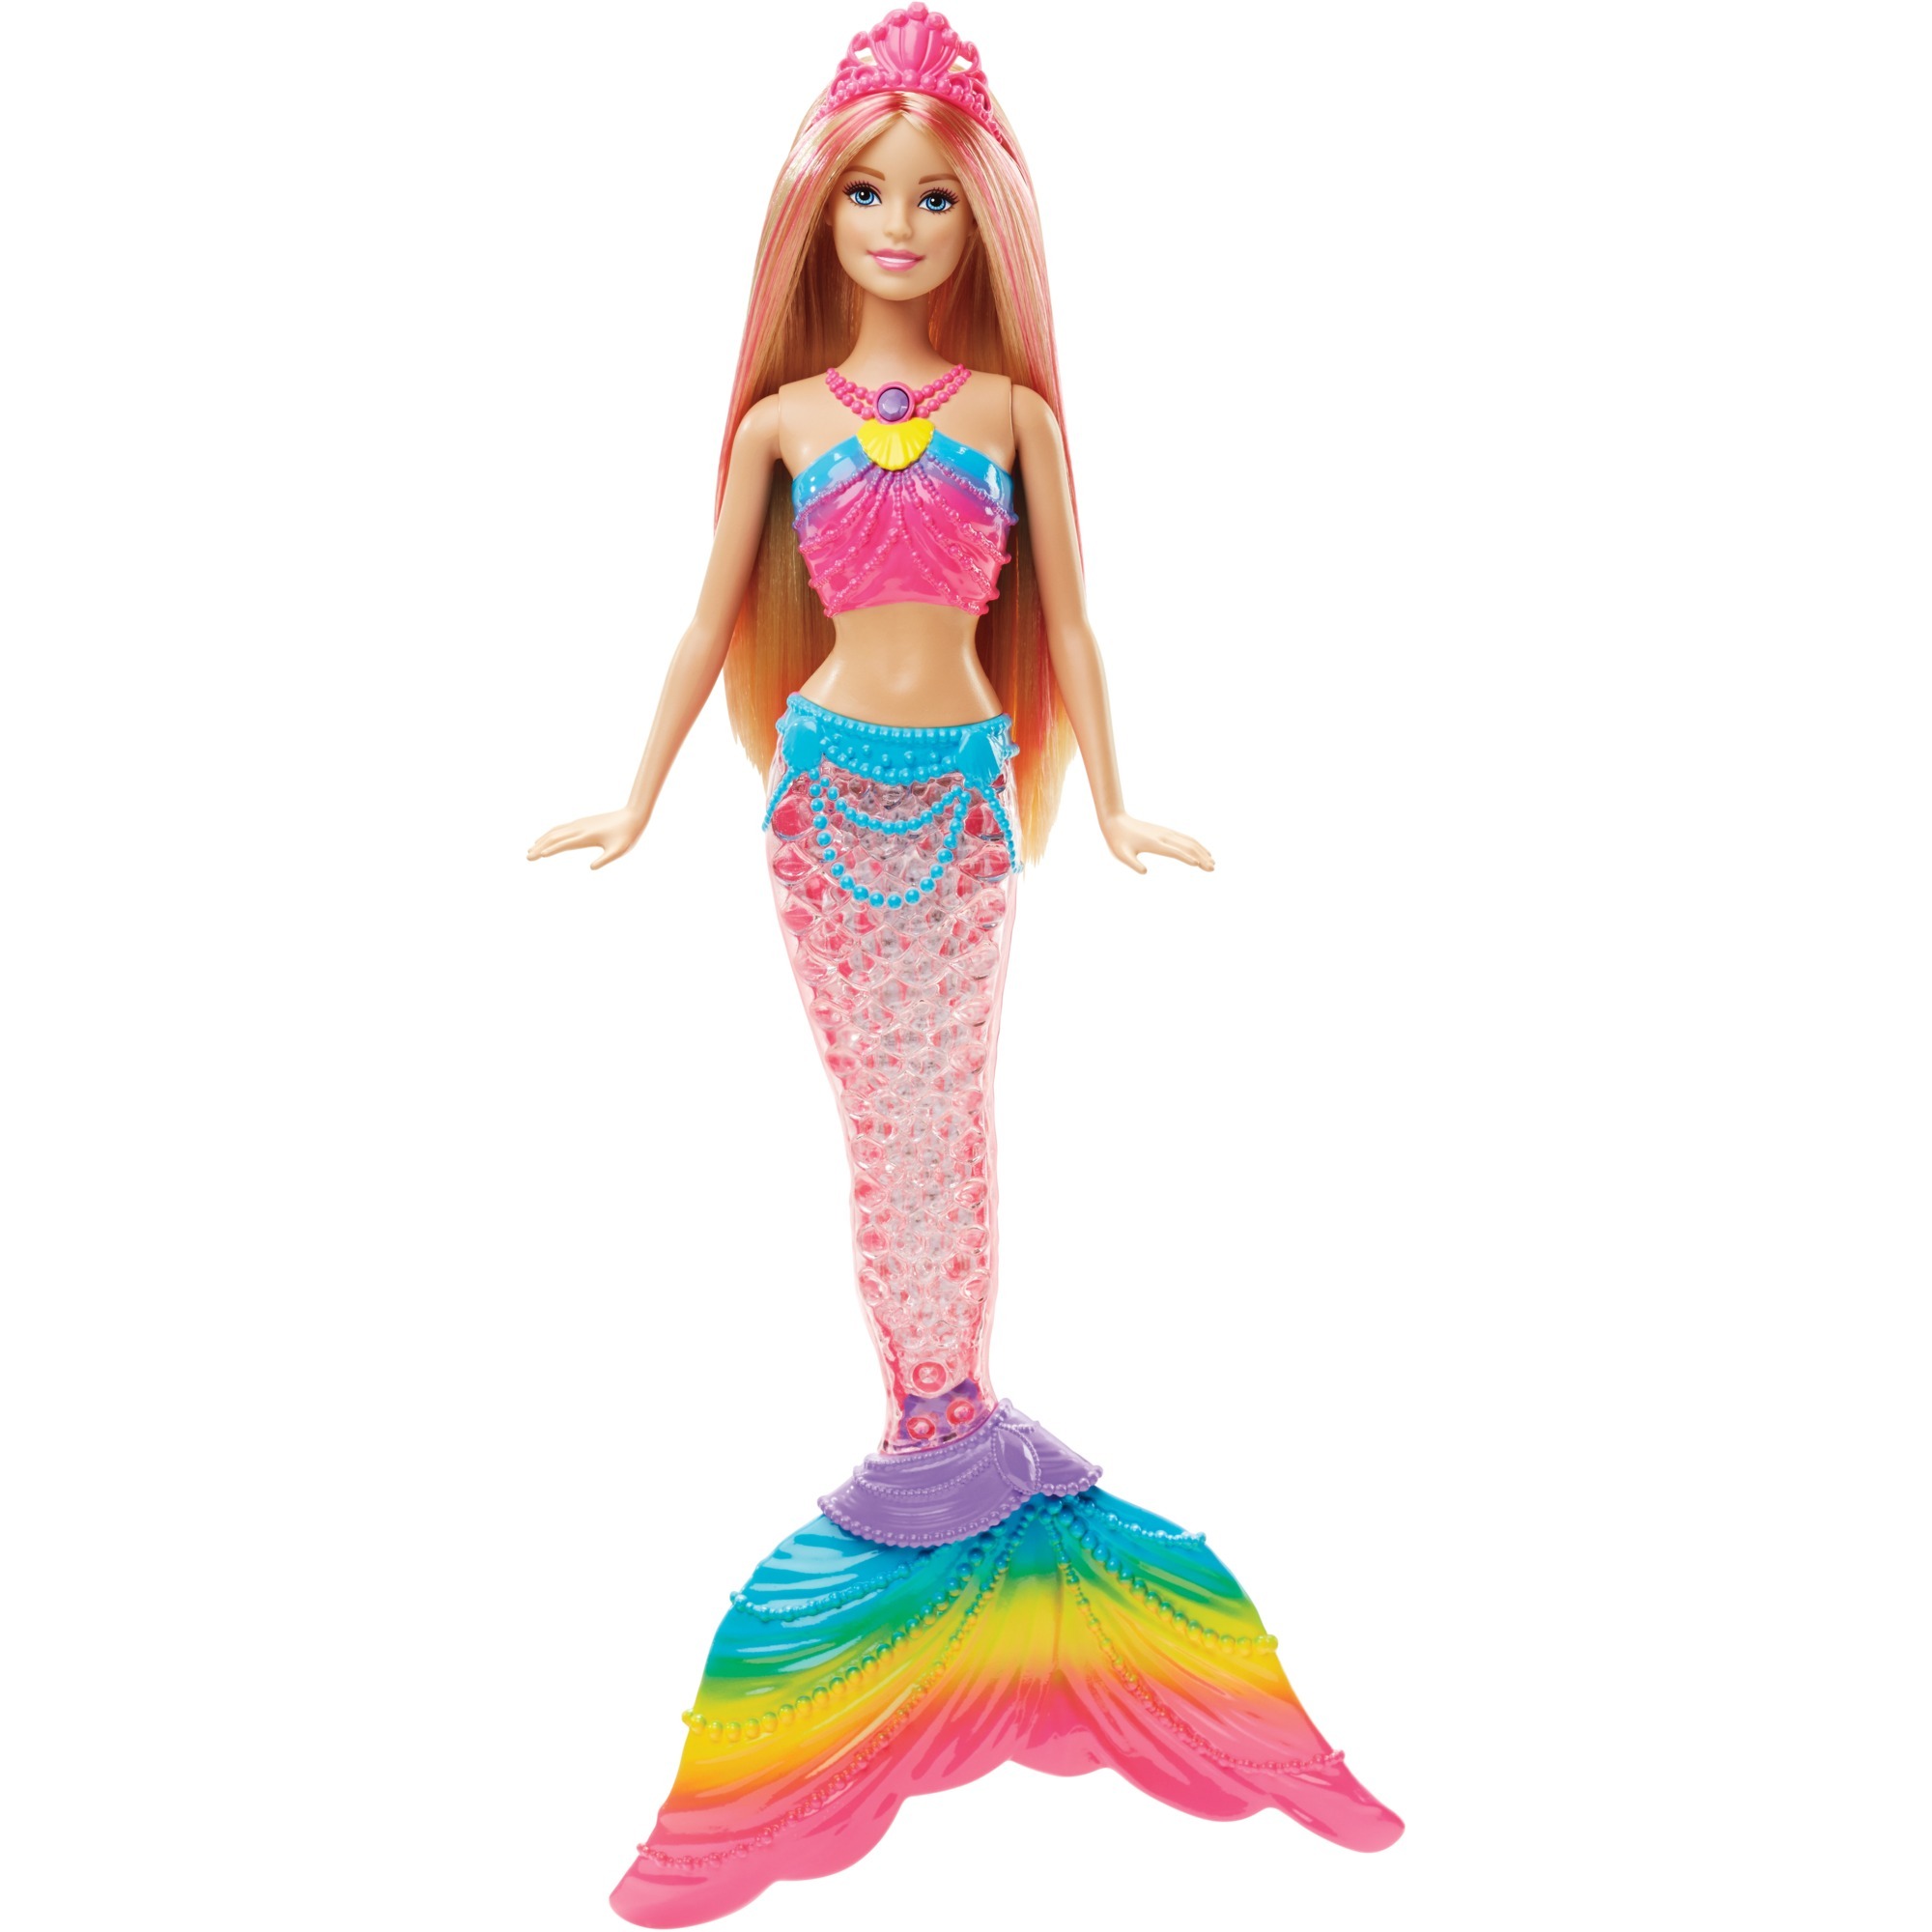 Image of Alternate - Barbie Dreamtopia Regenbogen-Meerjungfrau, Puppe online einkaufen bei Alternate